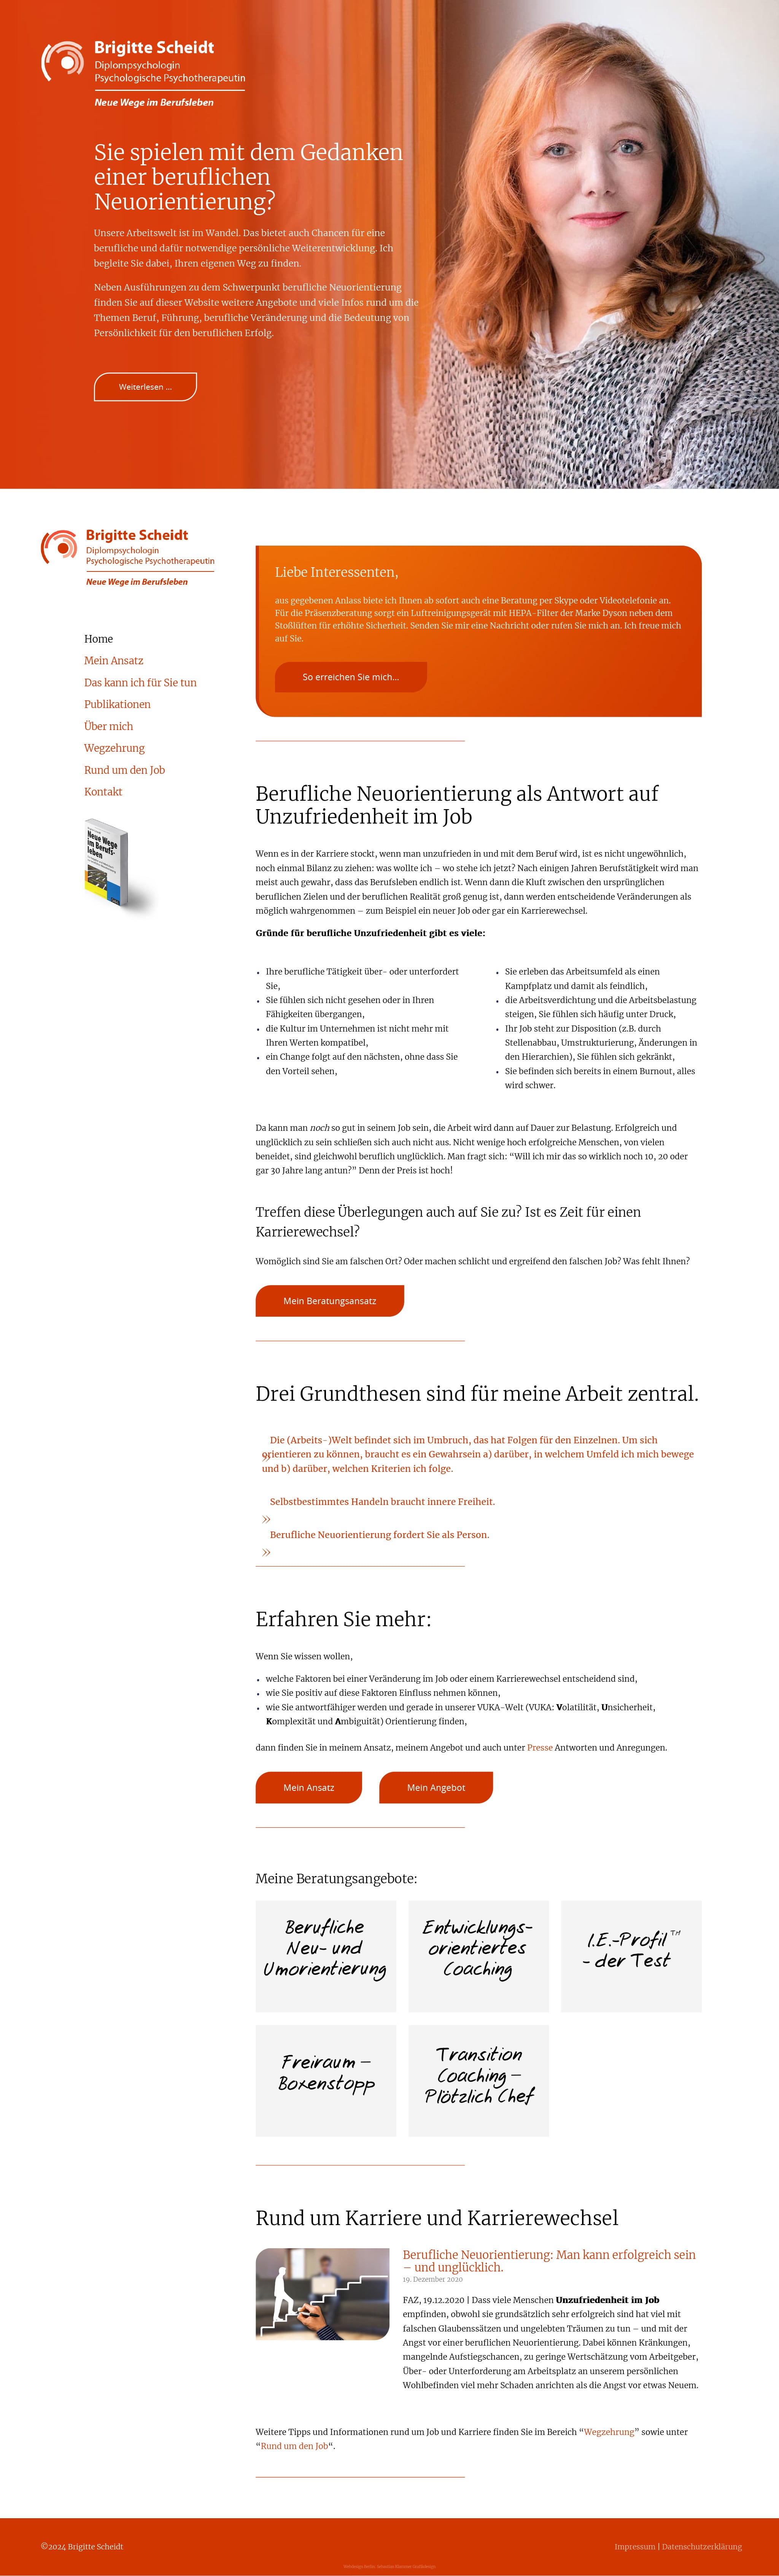 Webdesign Berlin: Neue Website für Brigitte Scheidt Berlin